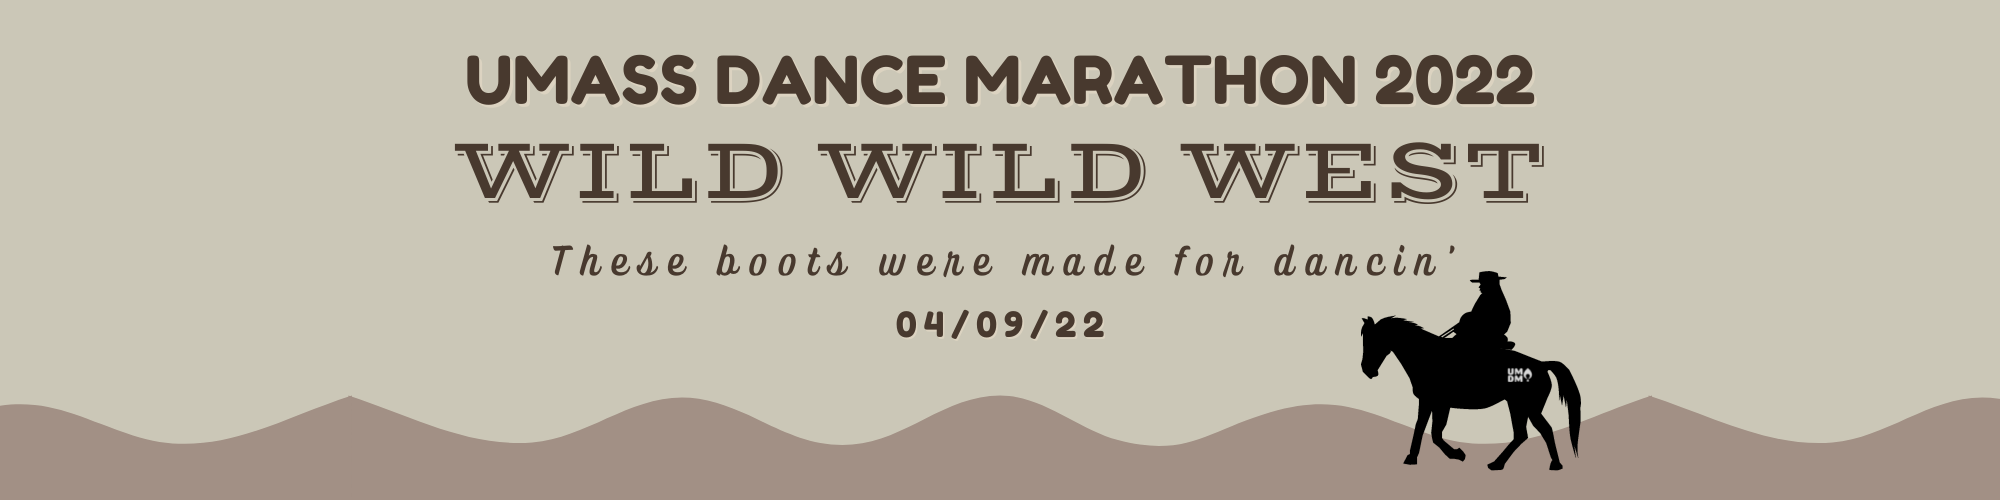 Umass Dance Marathon 2022 - Wild Wild West